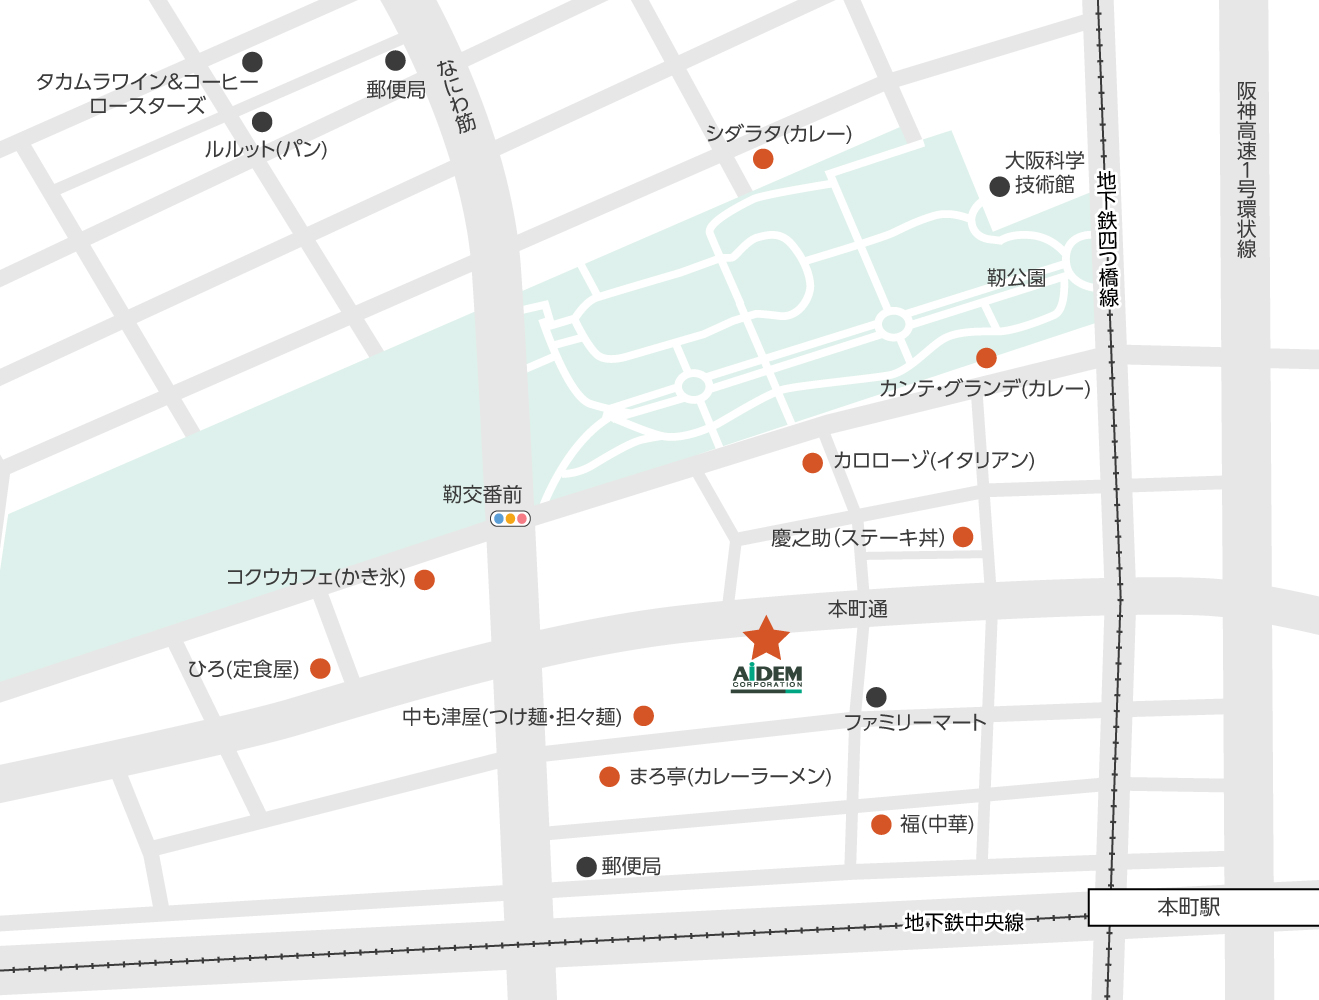 大阪支社周辺の飲食店マップ